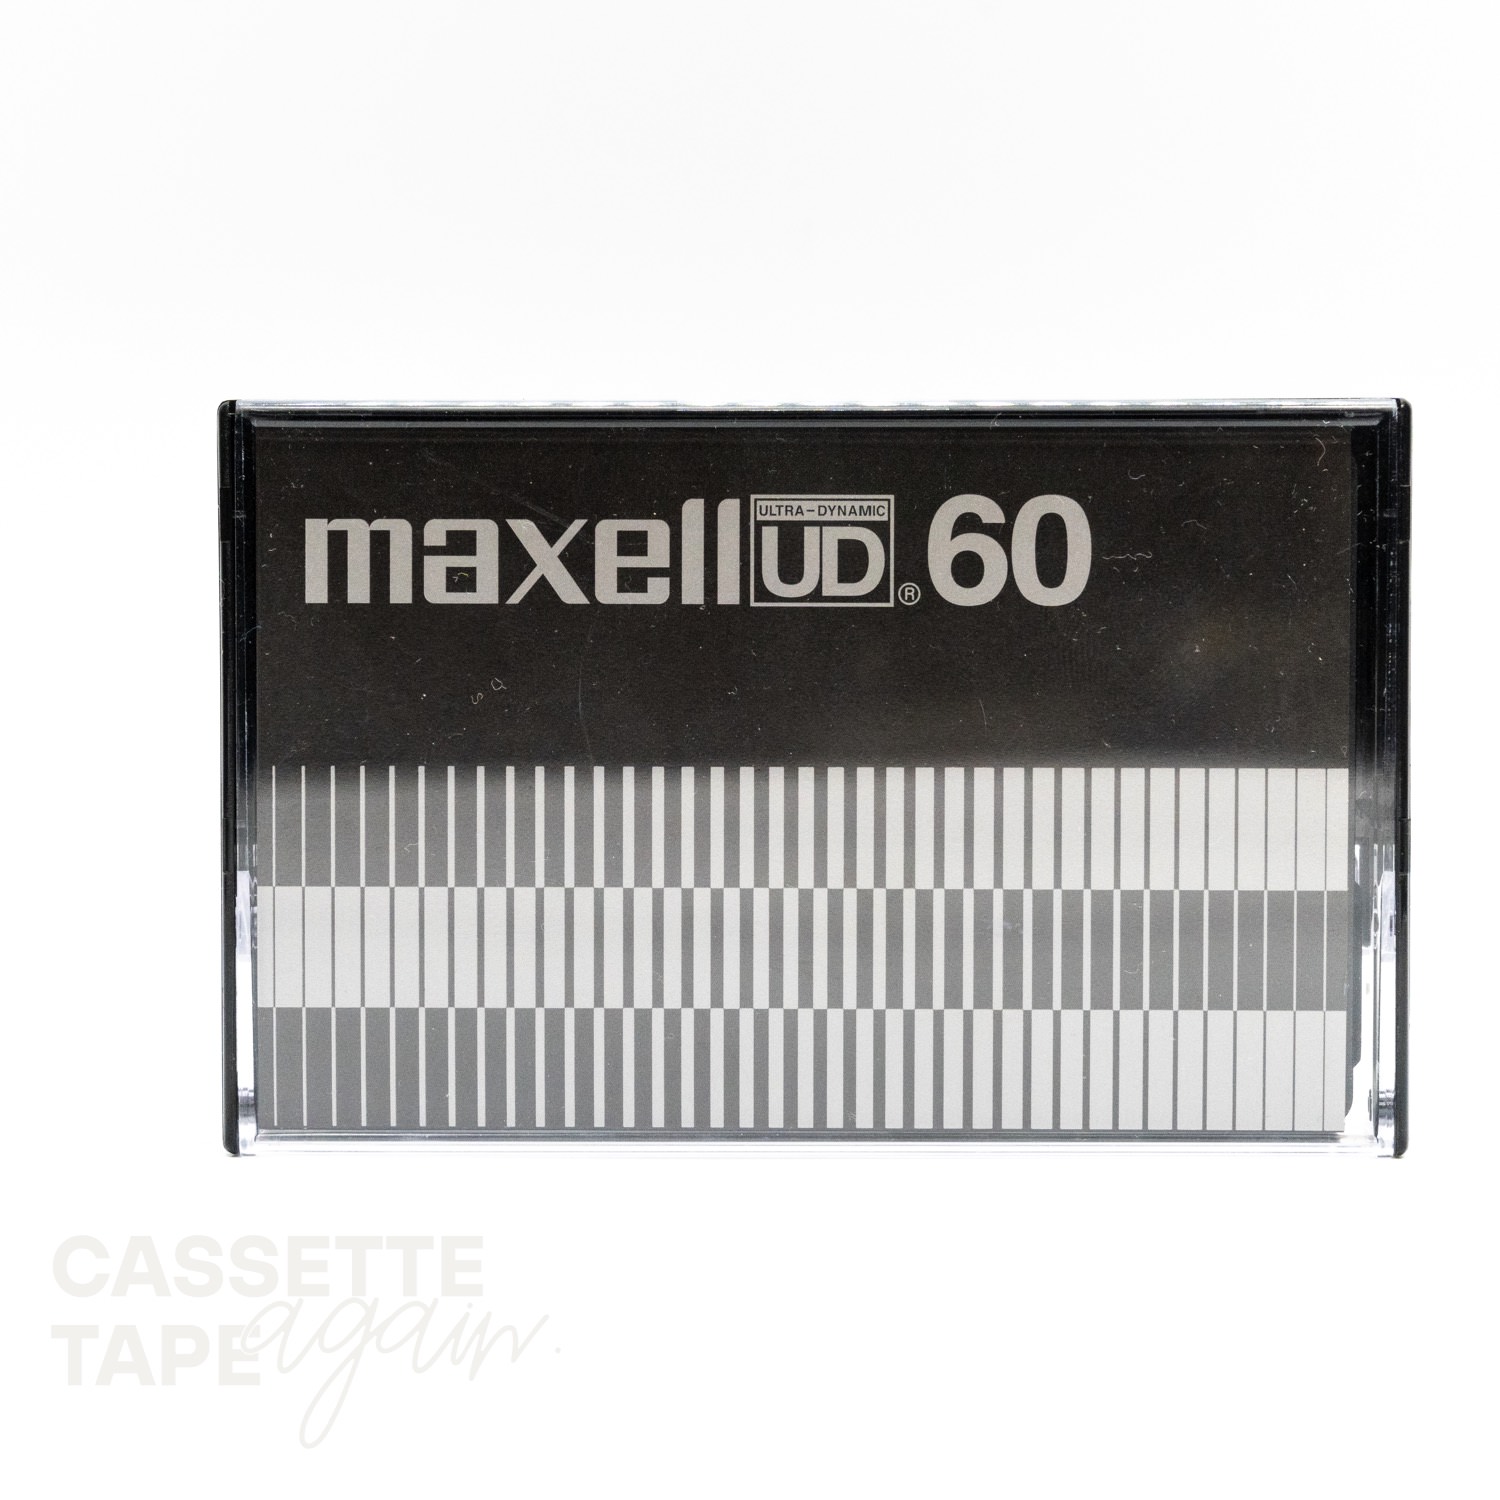 UD 60 / maxell(ノーマル)